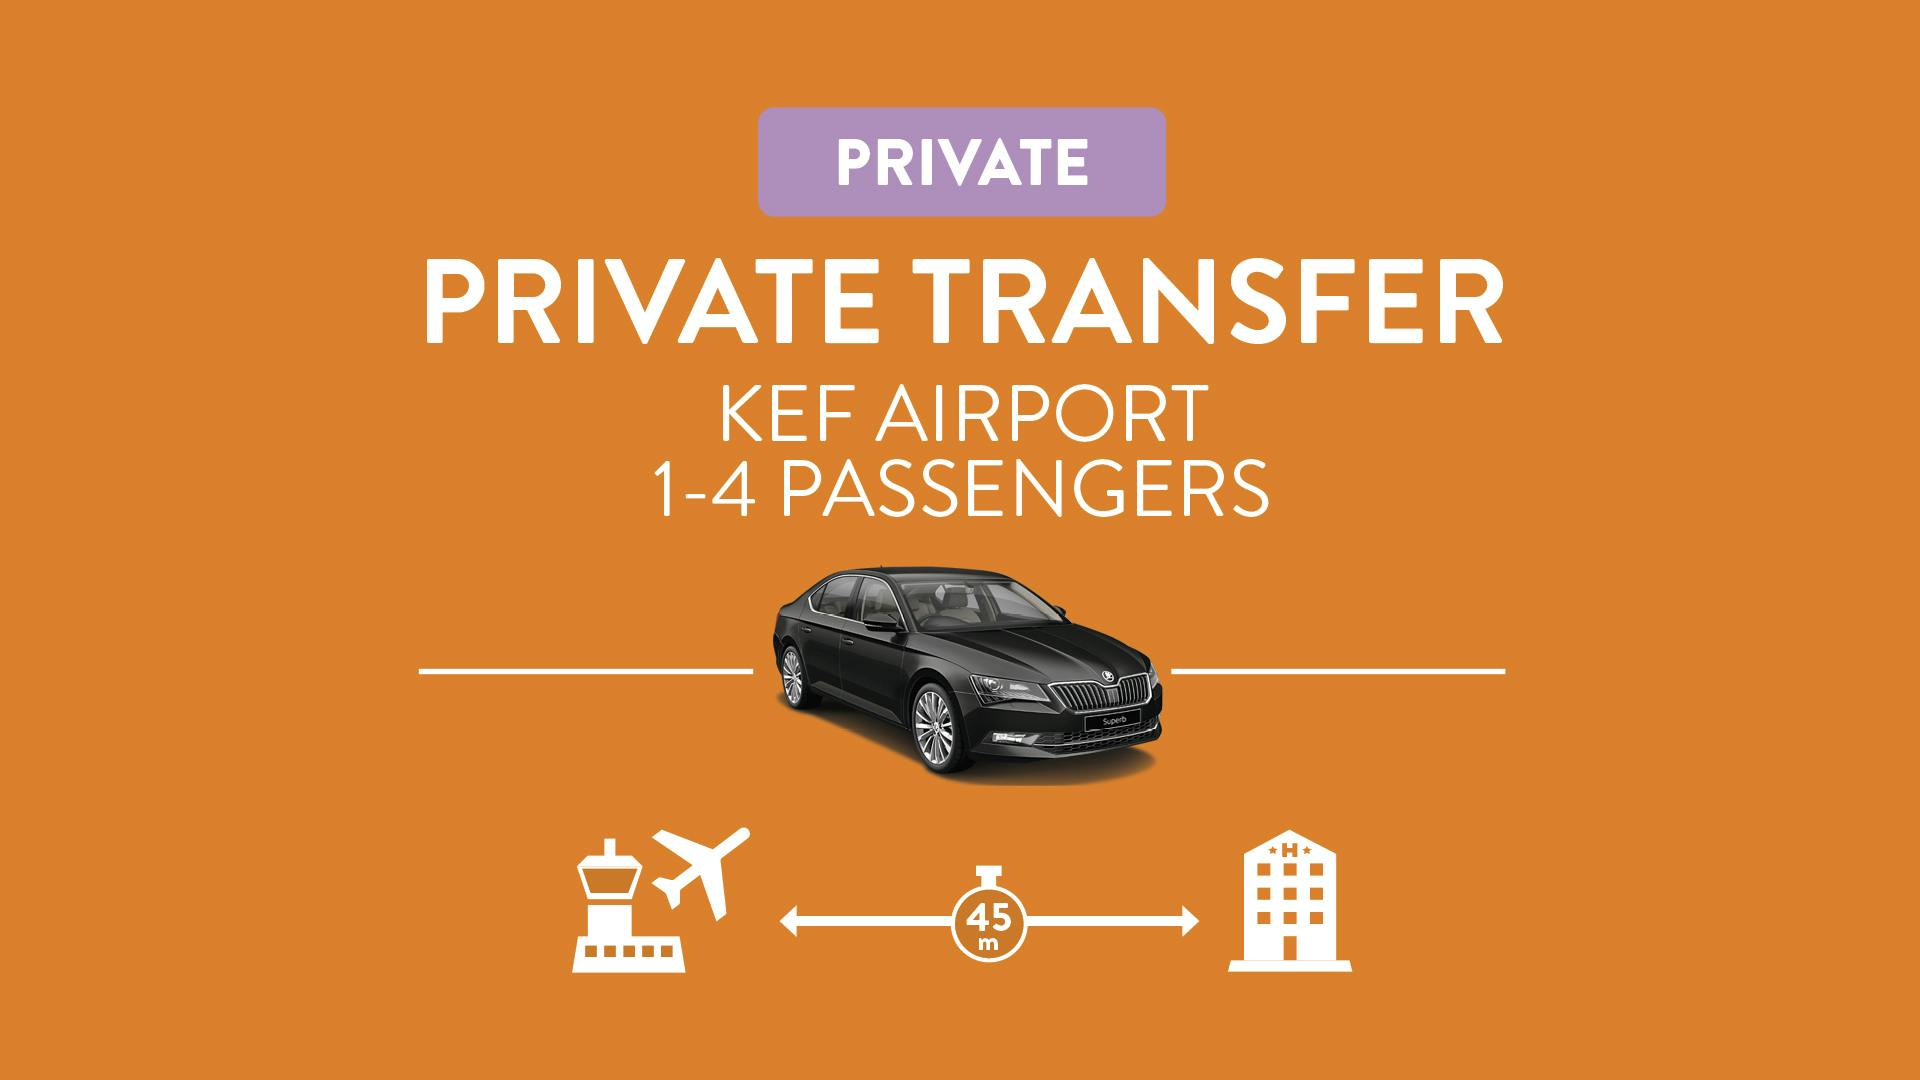 Private Airport Transfer 1-4 person